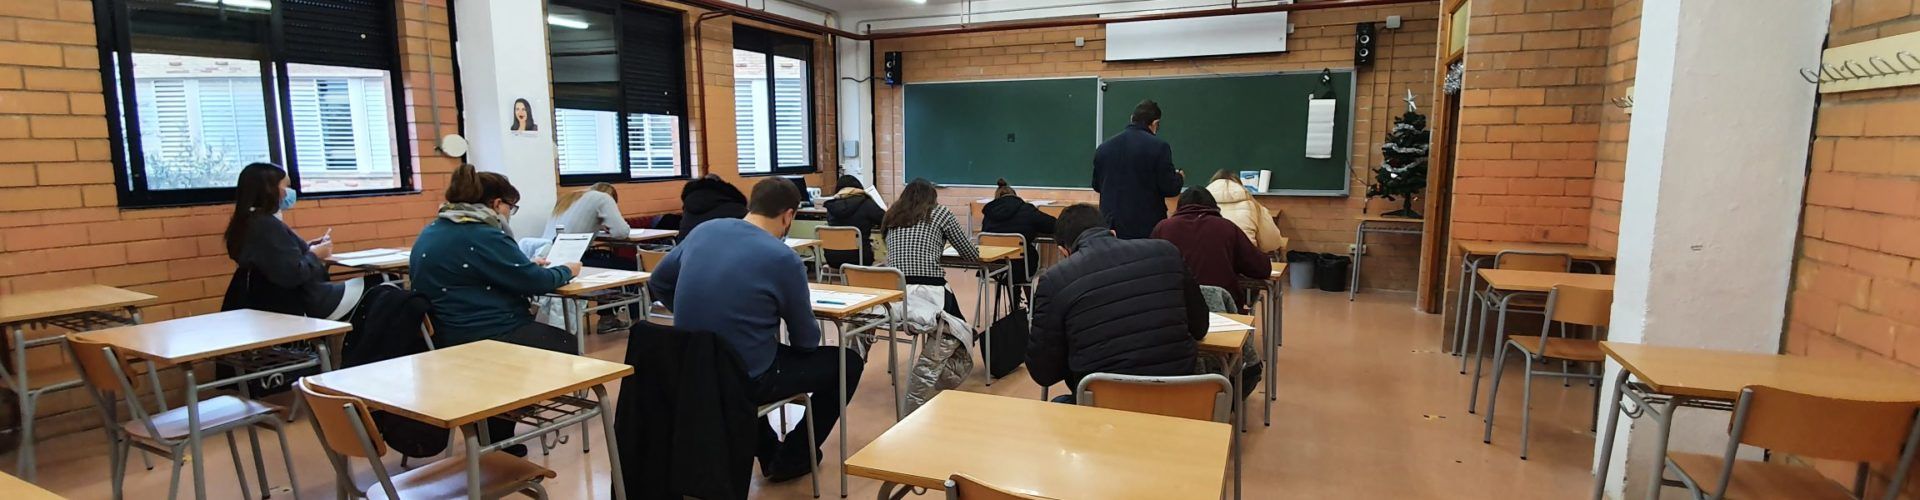 Exàmens extraordinaris de valencià a Vinaròs i les altres 23 seus de la JQCV